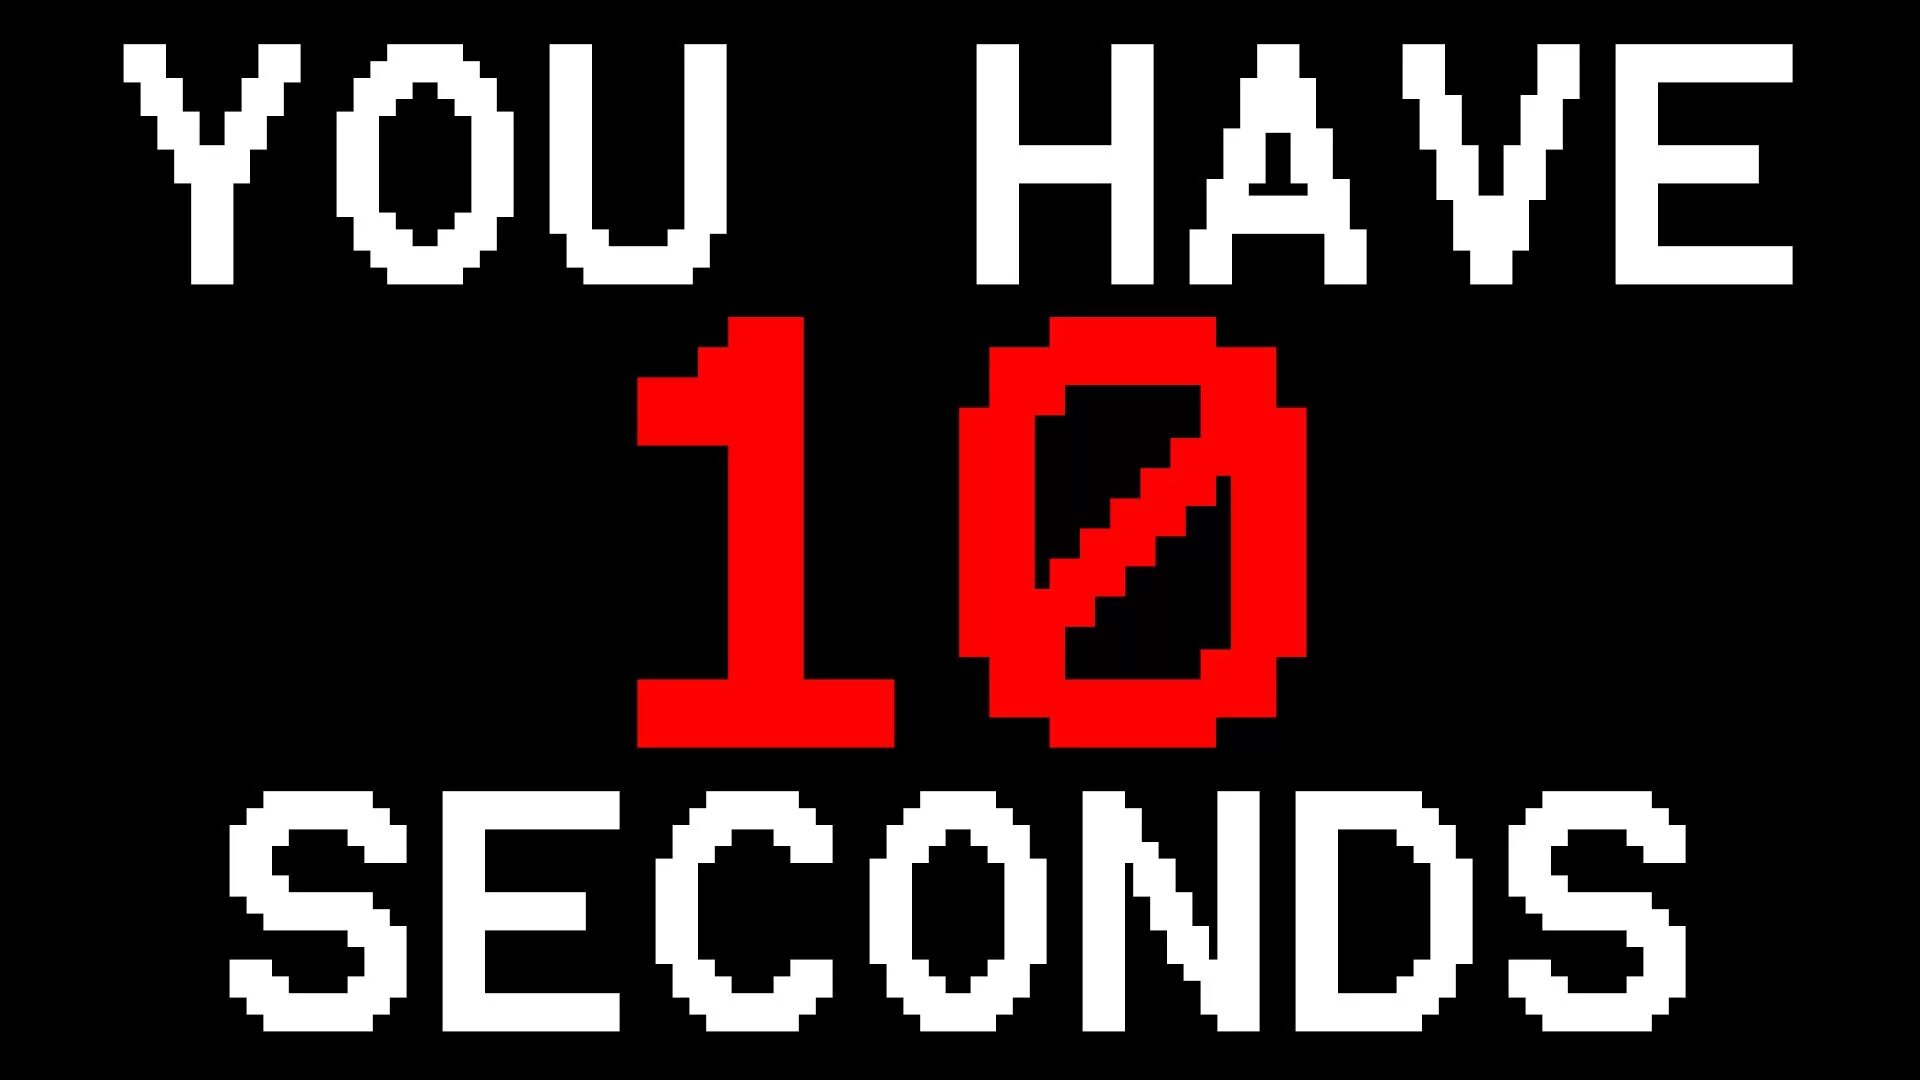 Макс 10 секунд. 10 Секунд. You have 10 seconds. Игра 10 секунд. 10^-10 Секунд.